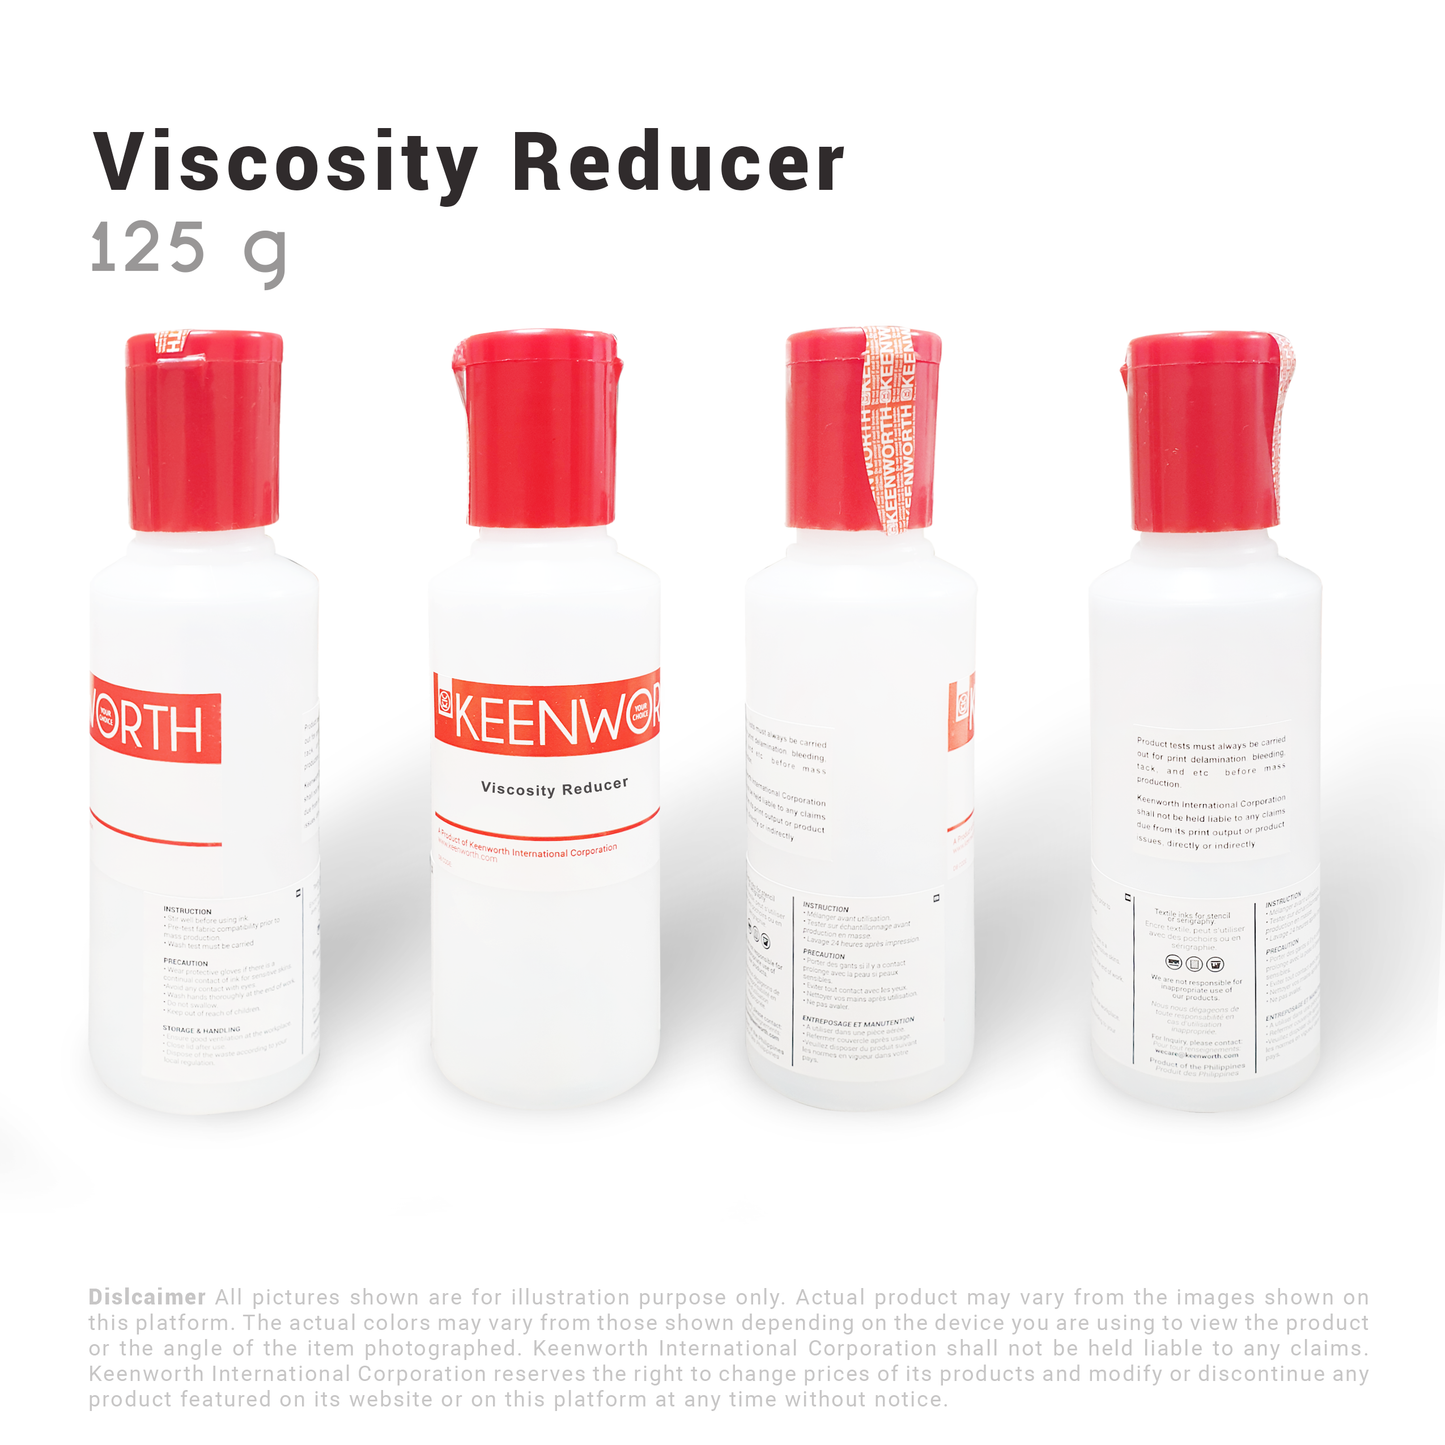 Viscosity Reducer